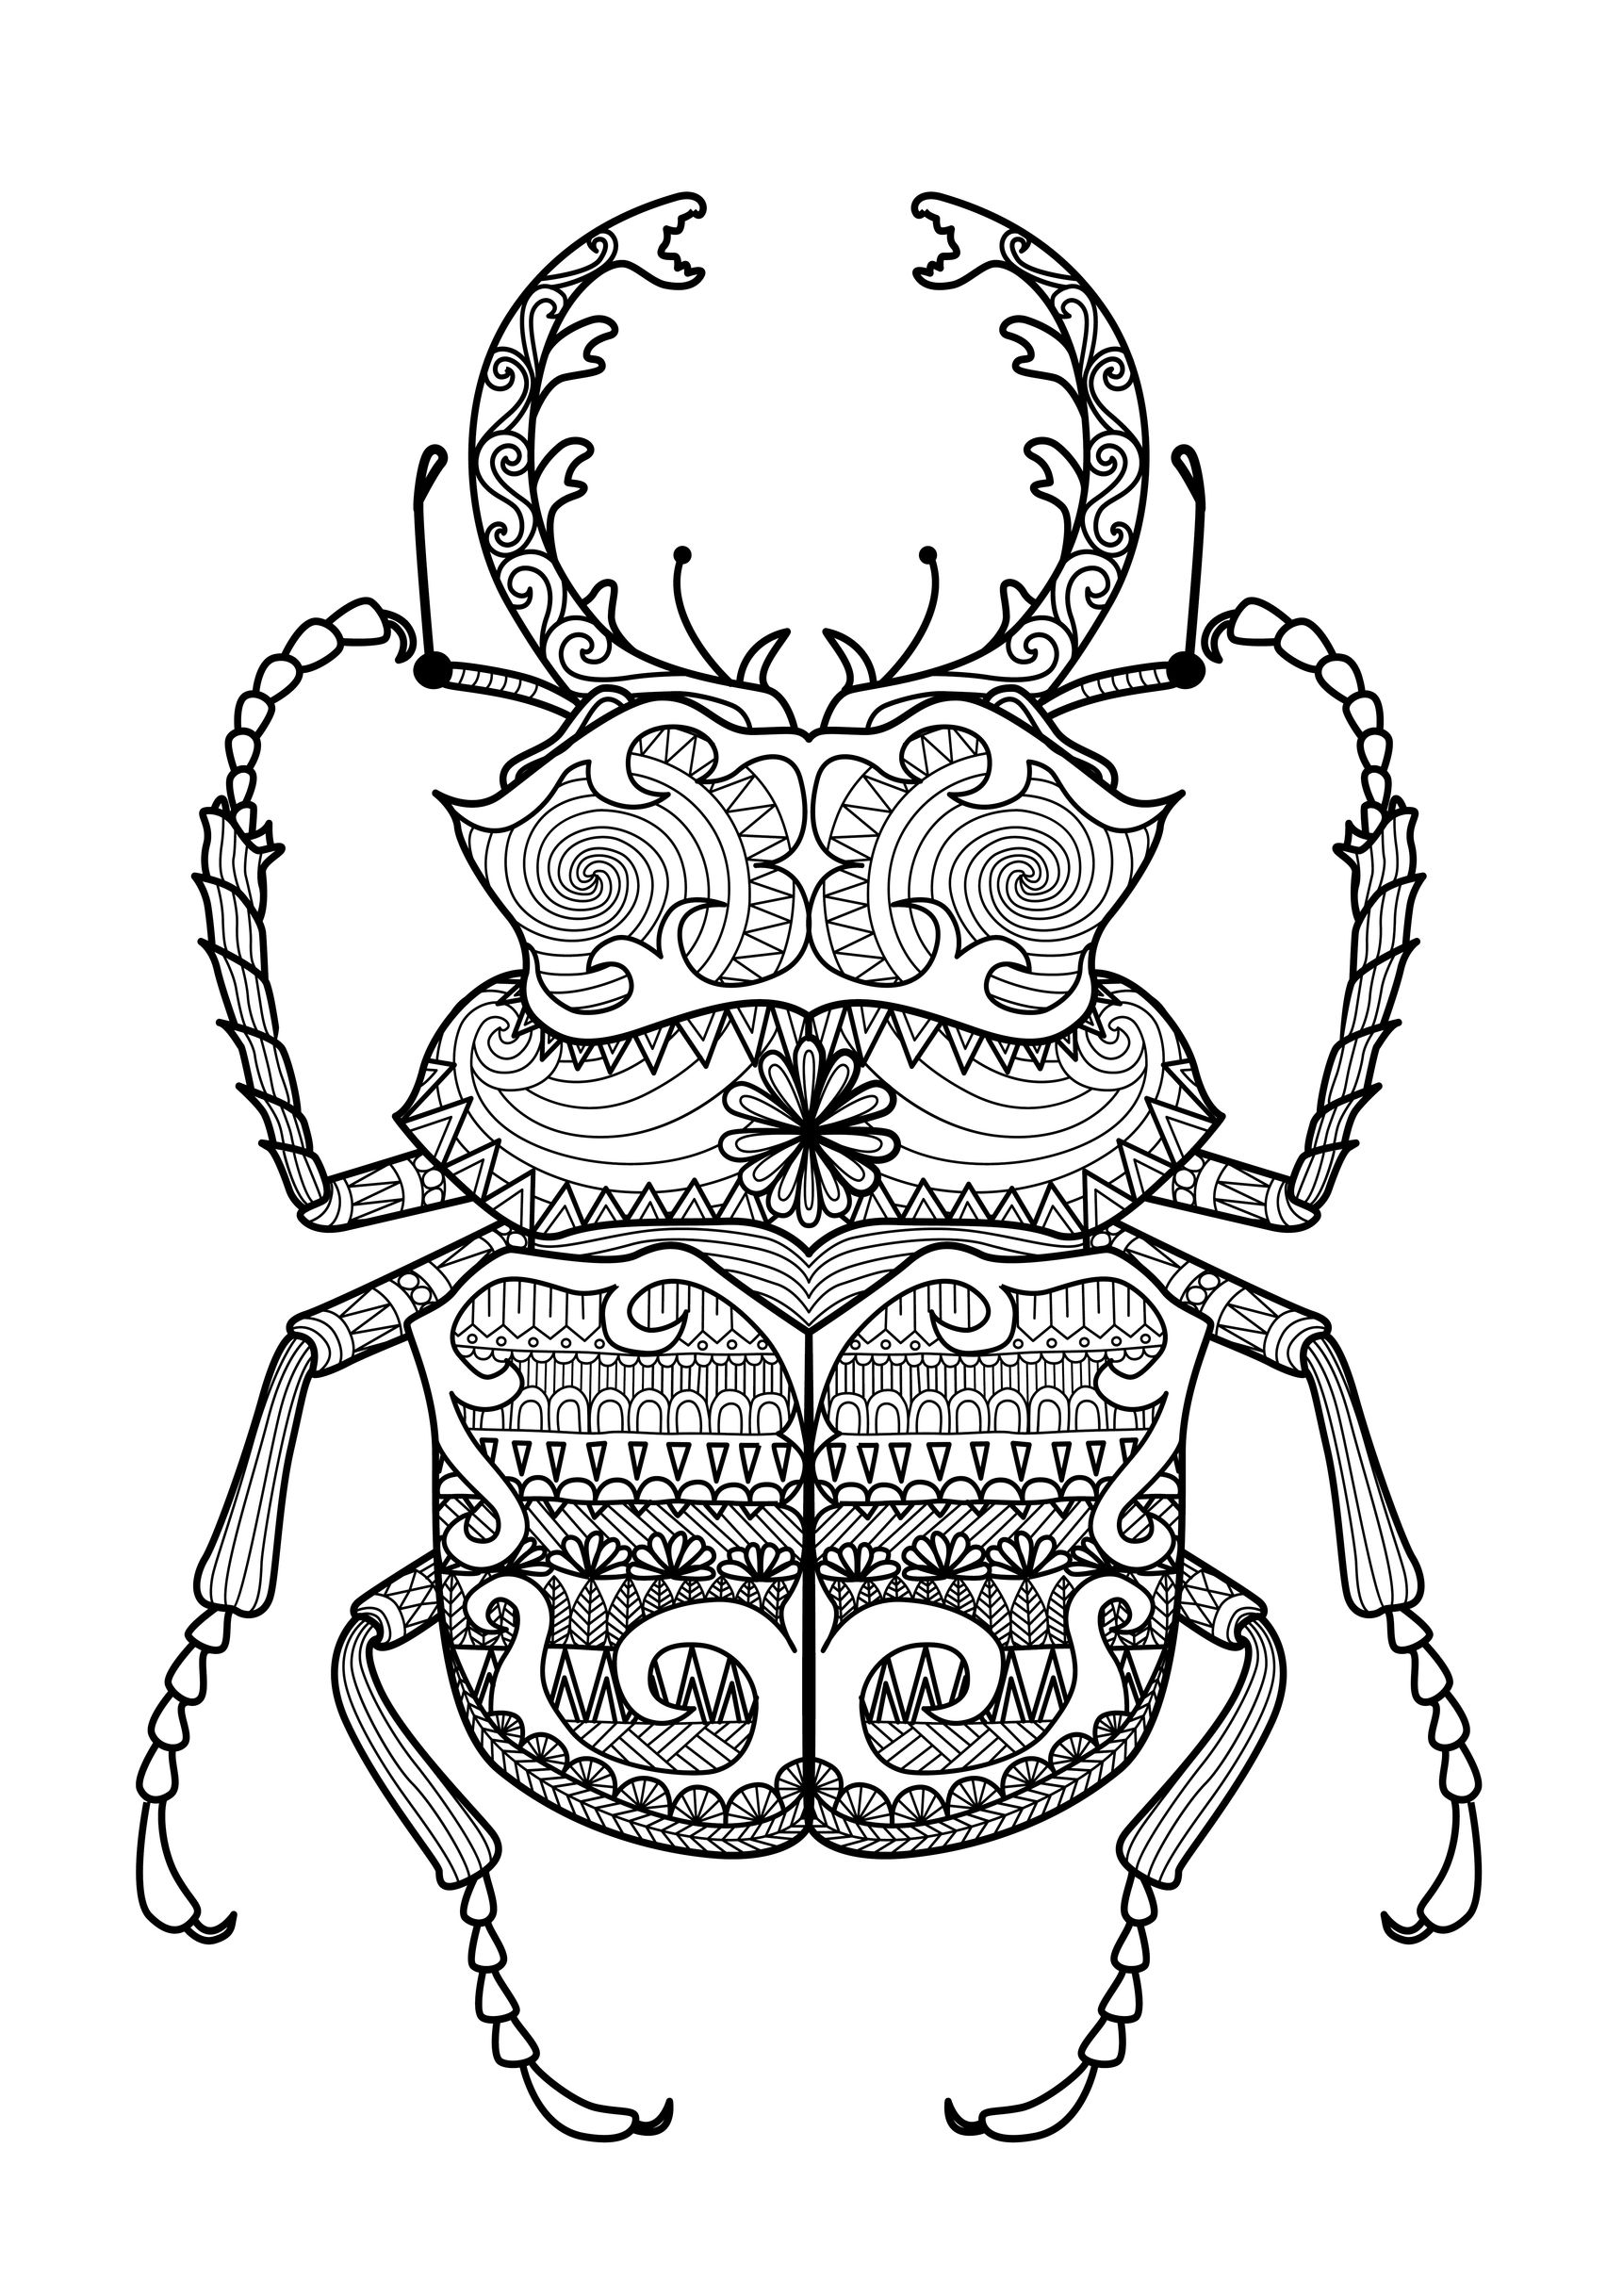 Página de coloração do escaravelho-zentângulo, por Bimdeedee (fonte: 123rf)